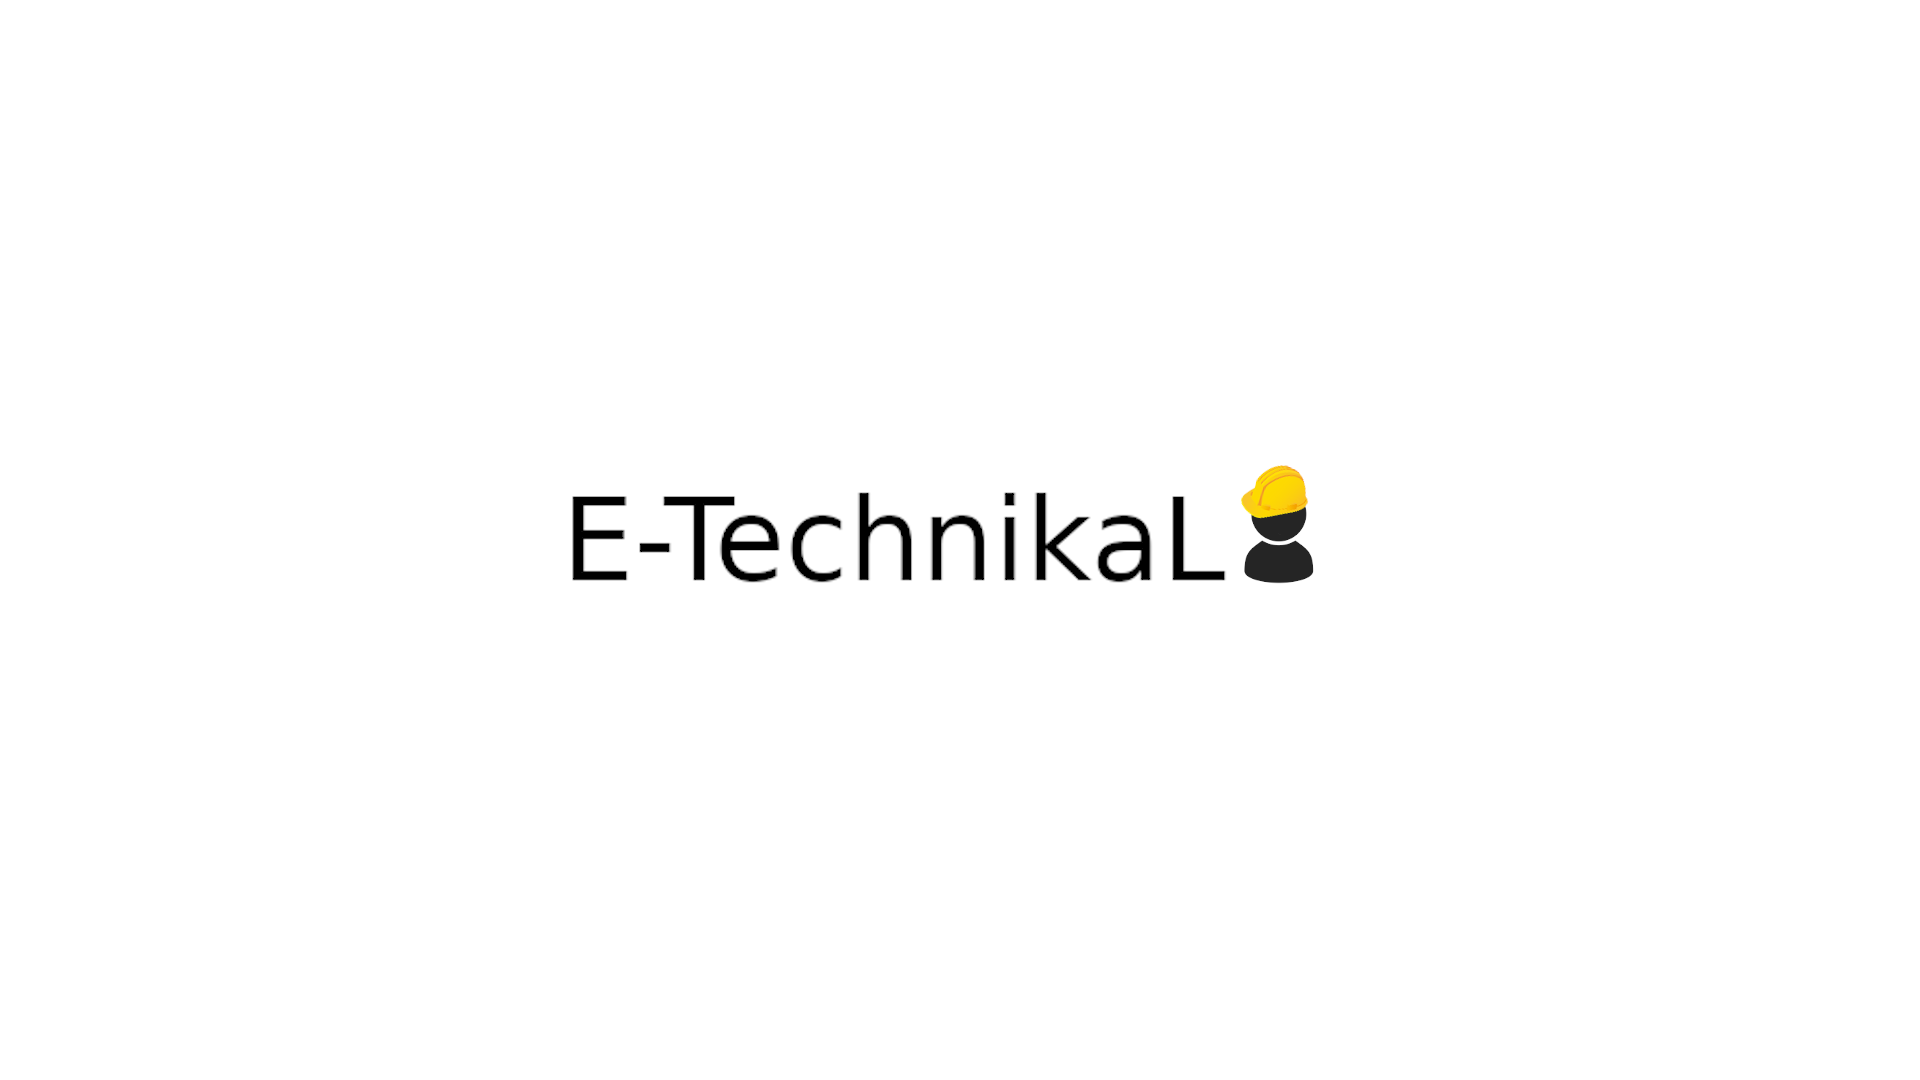 E-tecnical